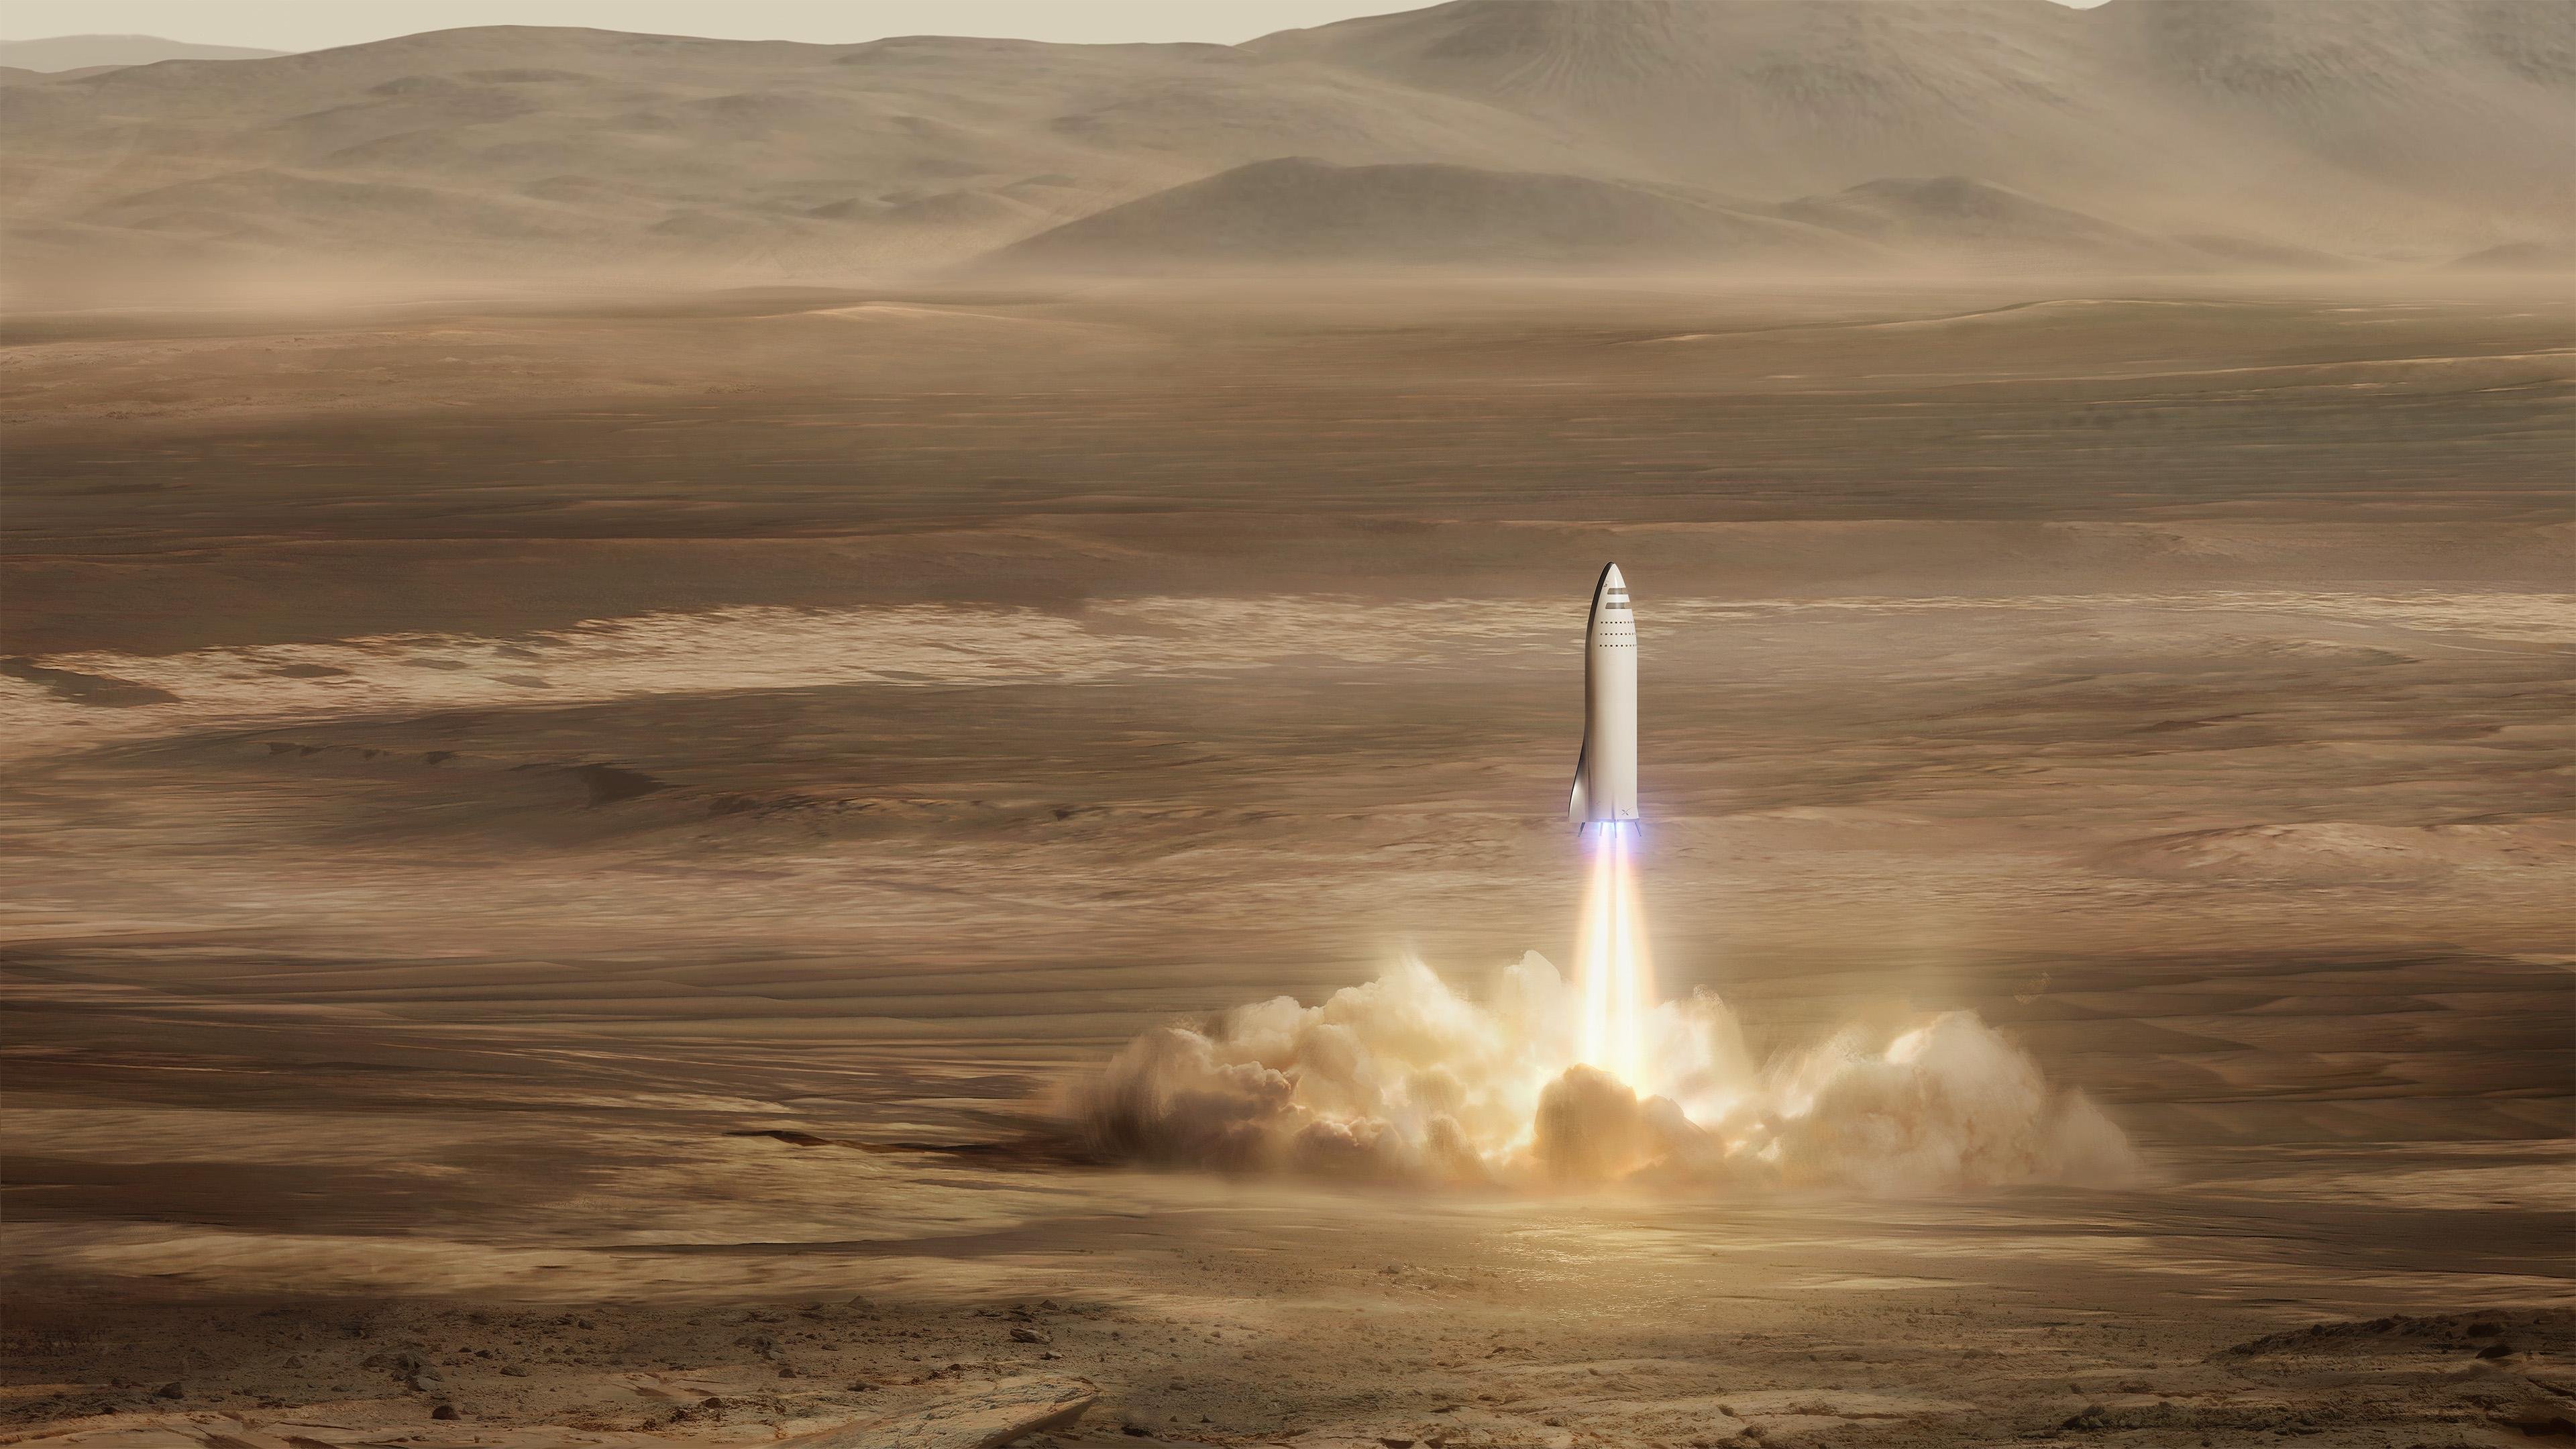 Hình nền 4K về chuyến bay lên Sao Hỏa của SpaceX sẽ khiến bạn rơi vào mê mẩn. Sự lãng mạn và kỳ diệu của vũ trụ đều được tái hiện rất tốt trong bức ảnh này.